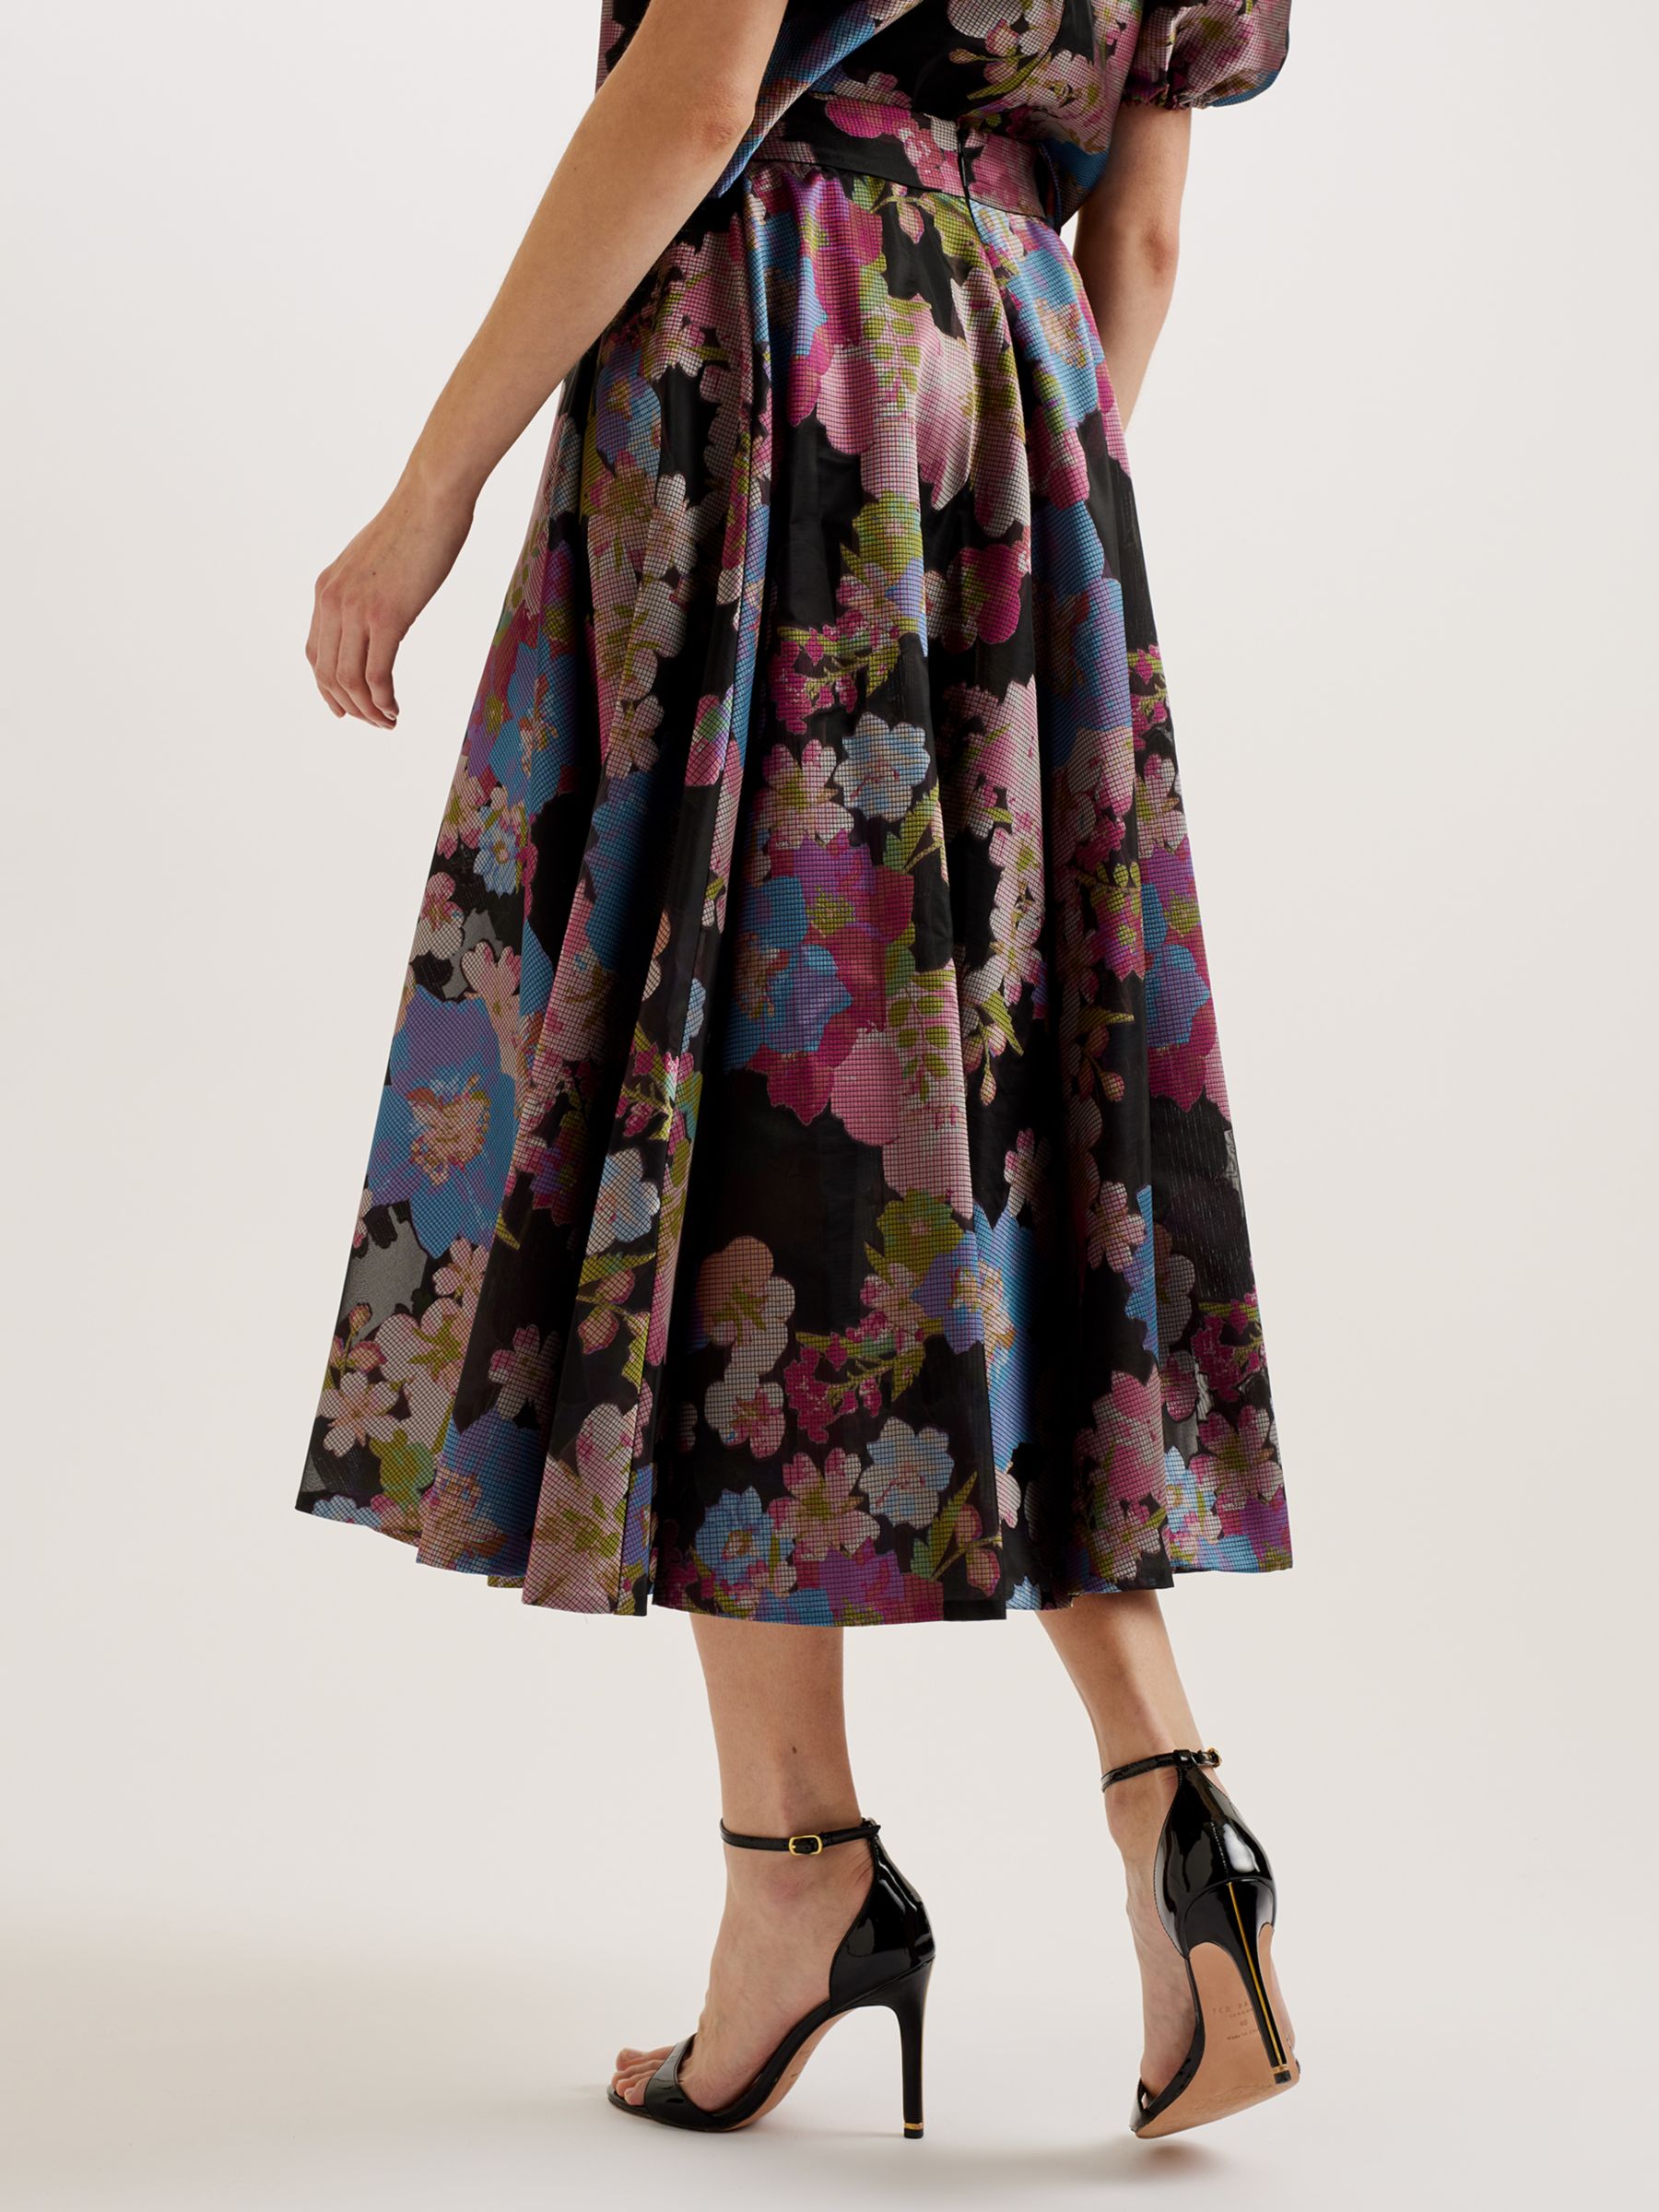 Ted Baker Bursa Jacquard Floral Midi Skirt, Black/Multi, 12